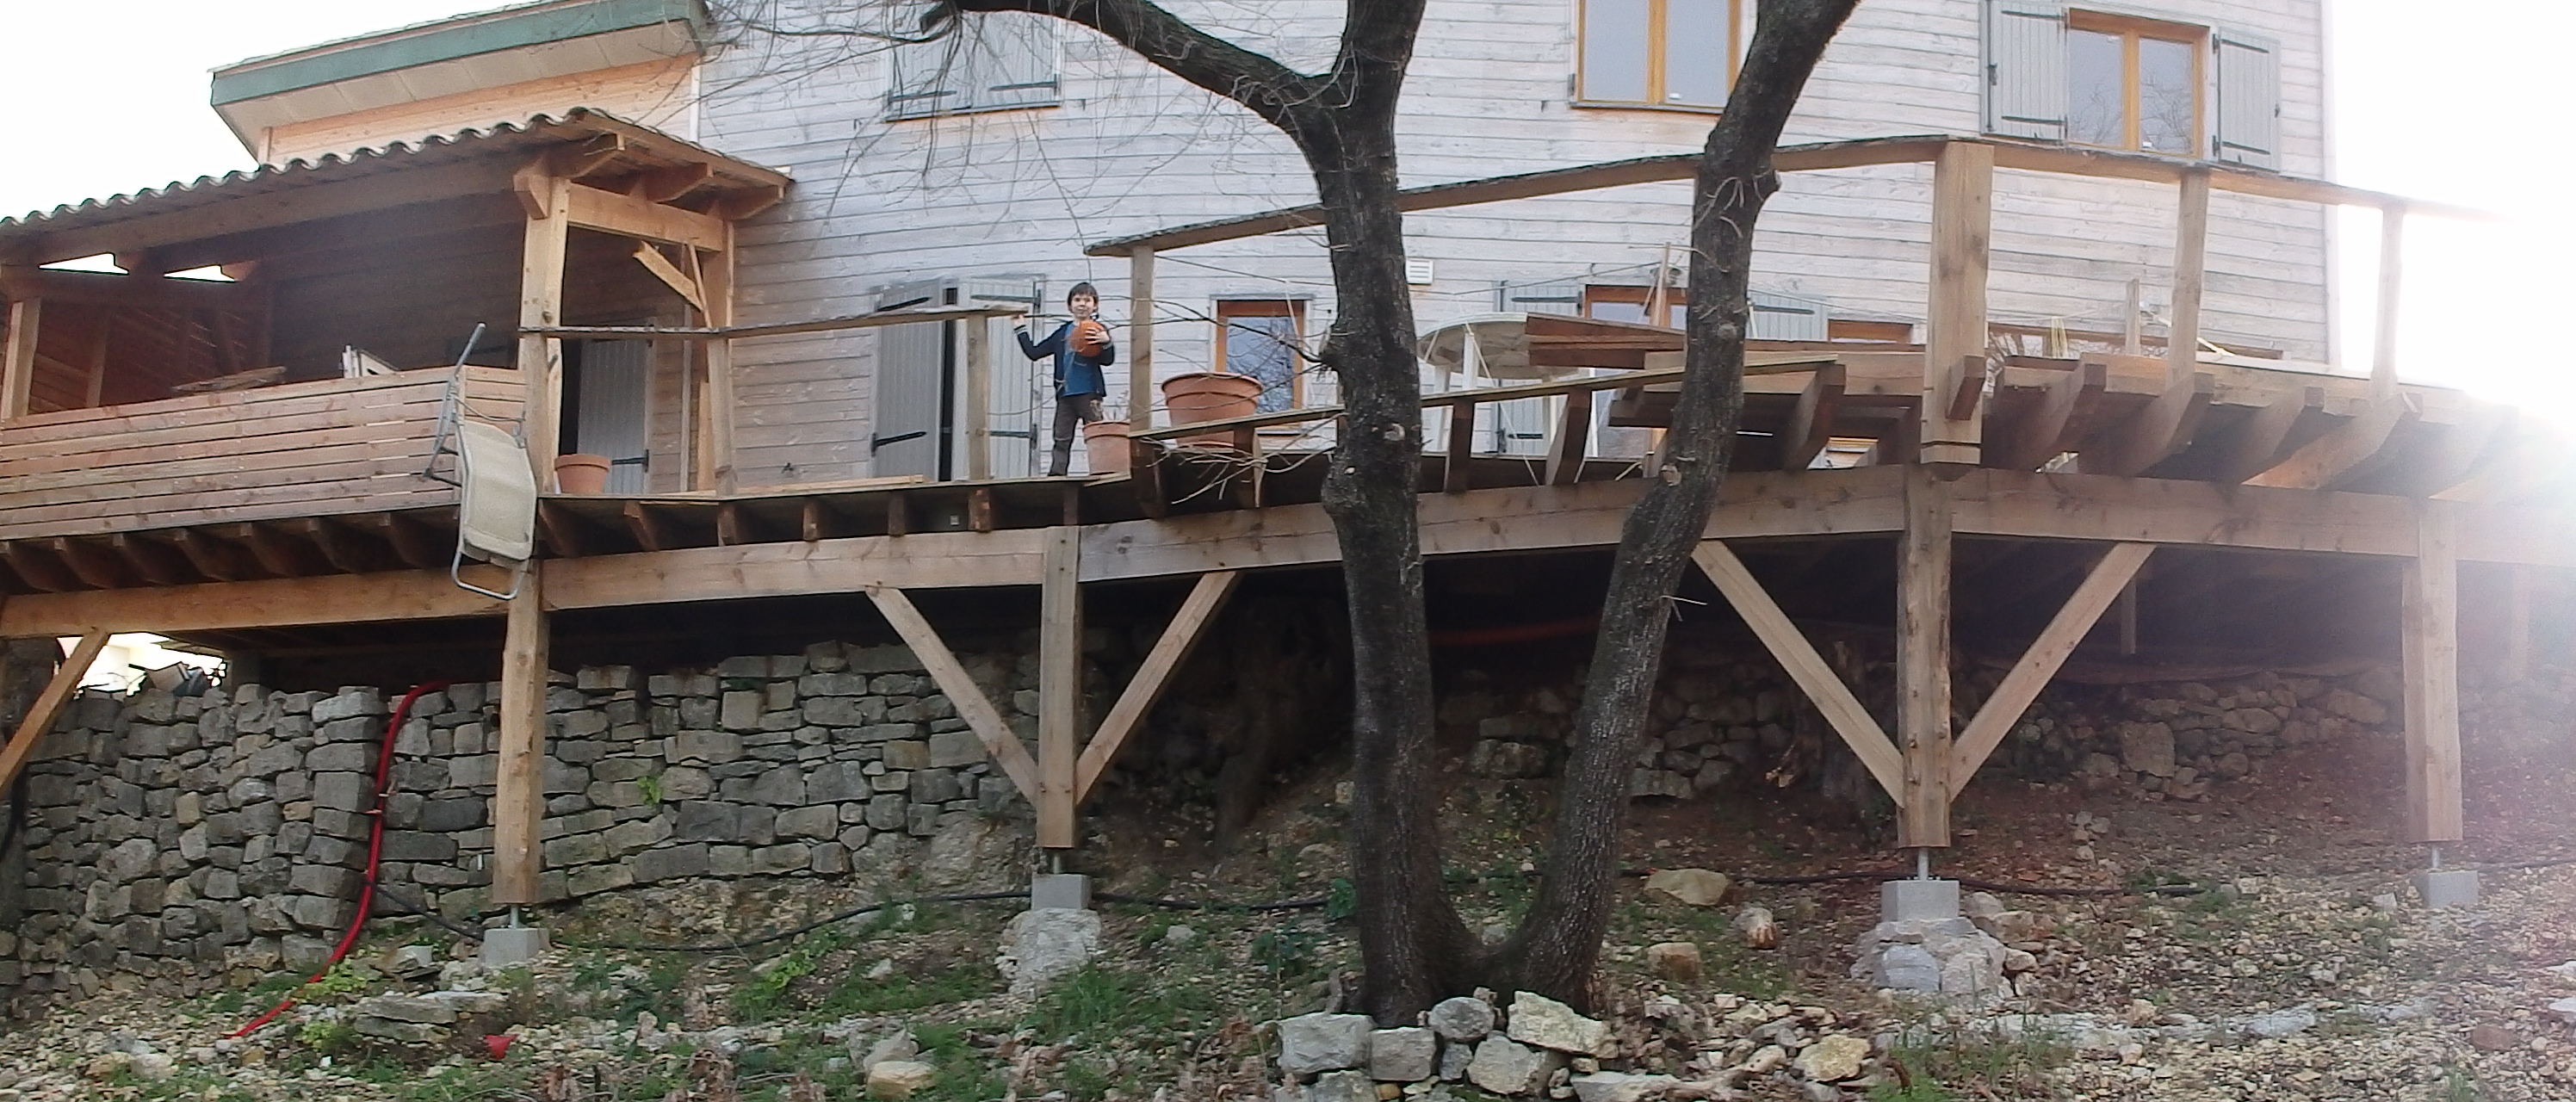 terrasse bois sur pilotis srbois